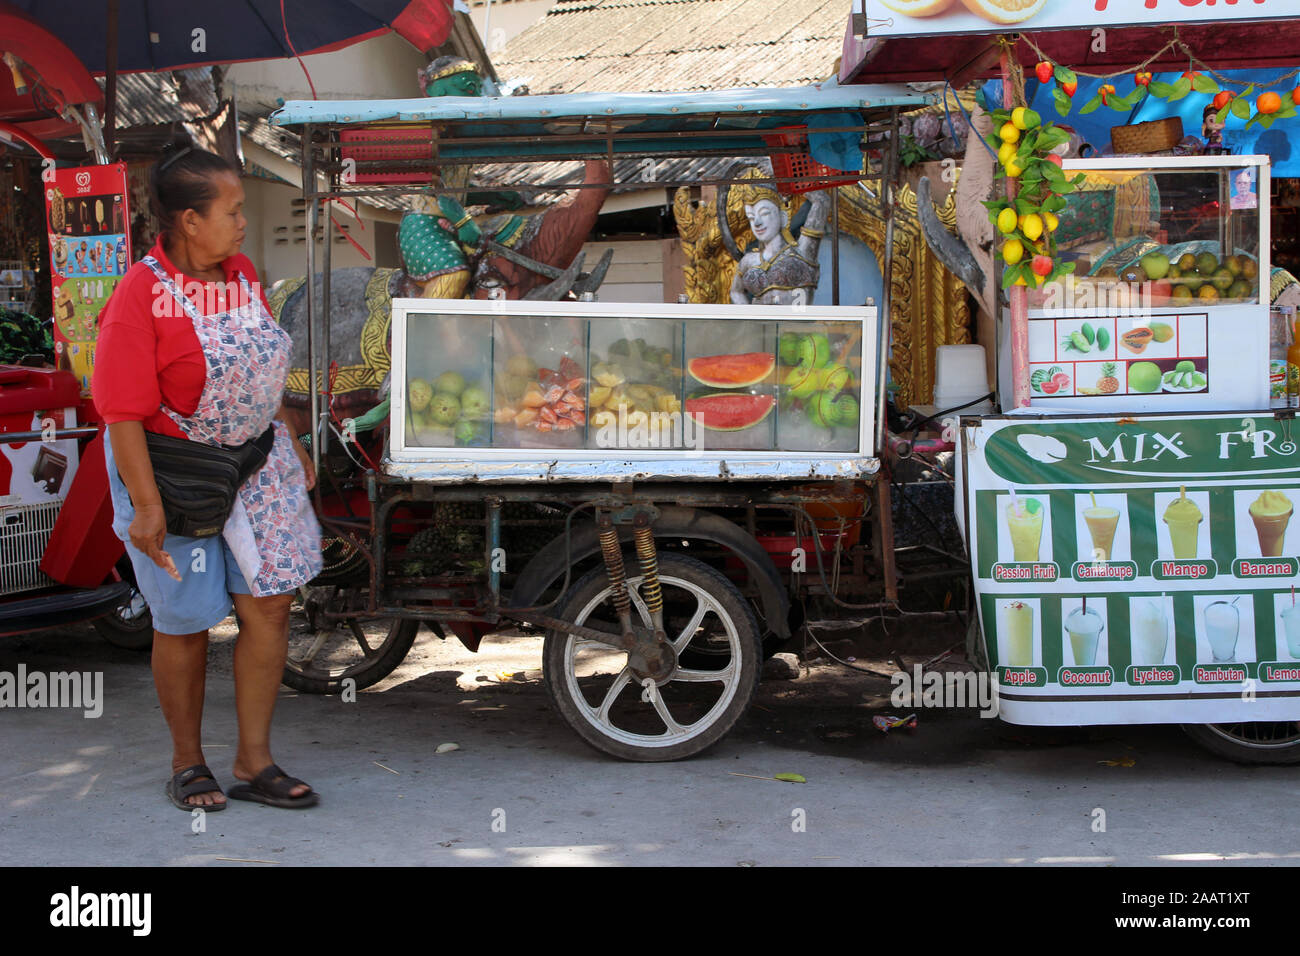 Comida en la calle en el Gran Buda en Koh Samui, Tailandia Foto de stock